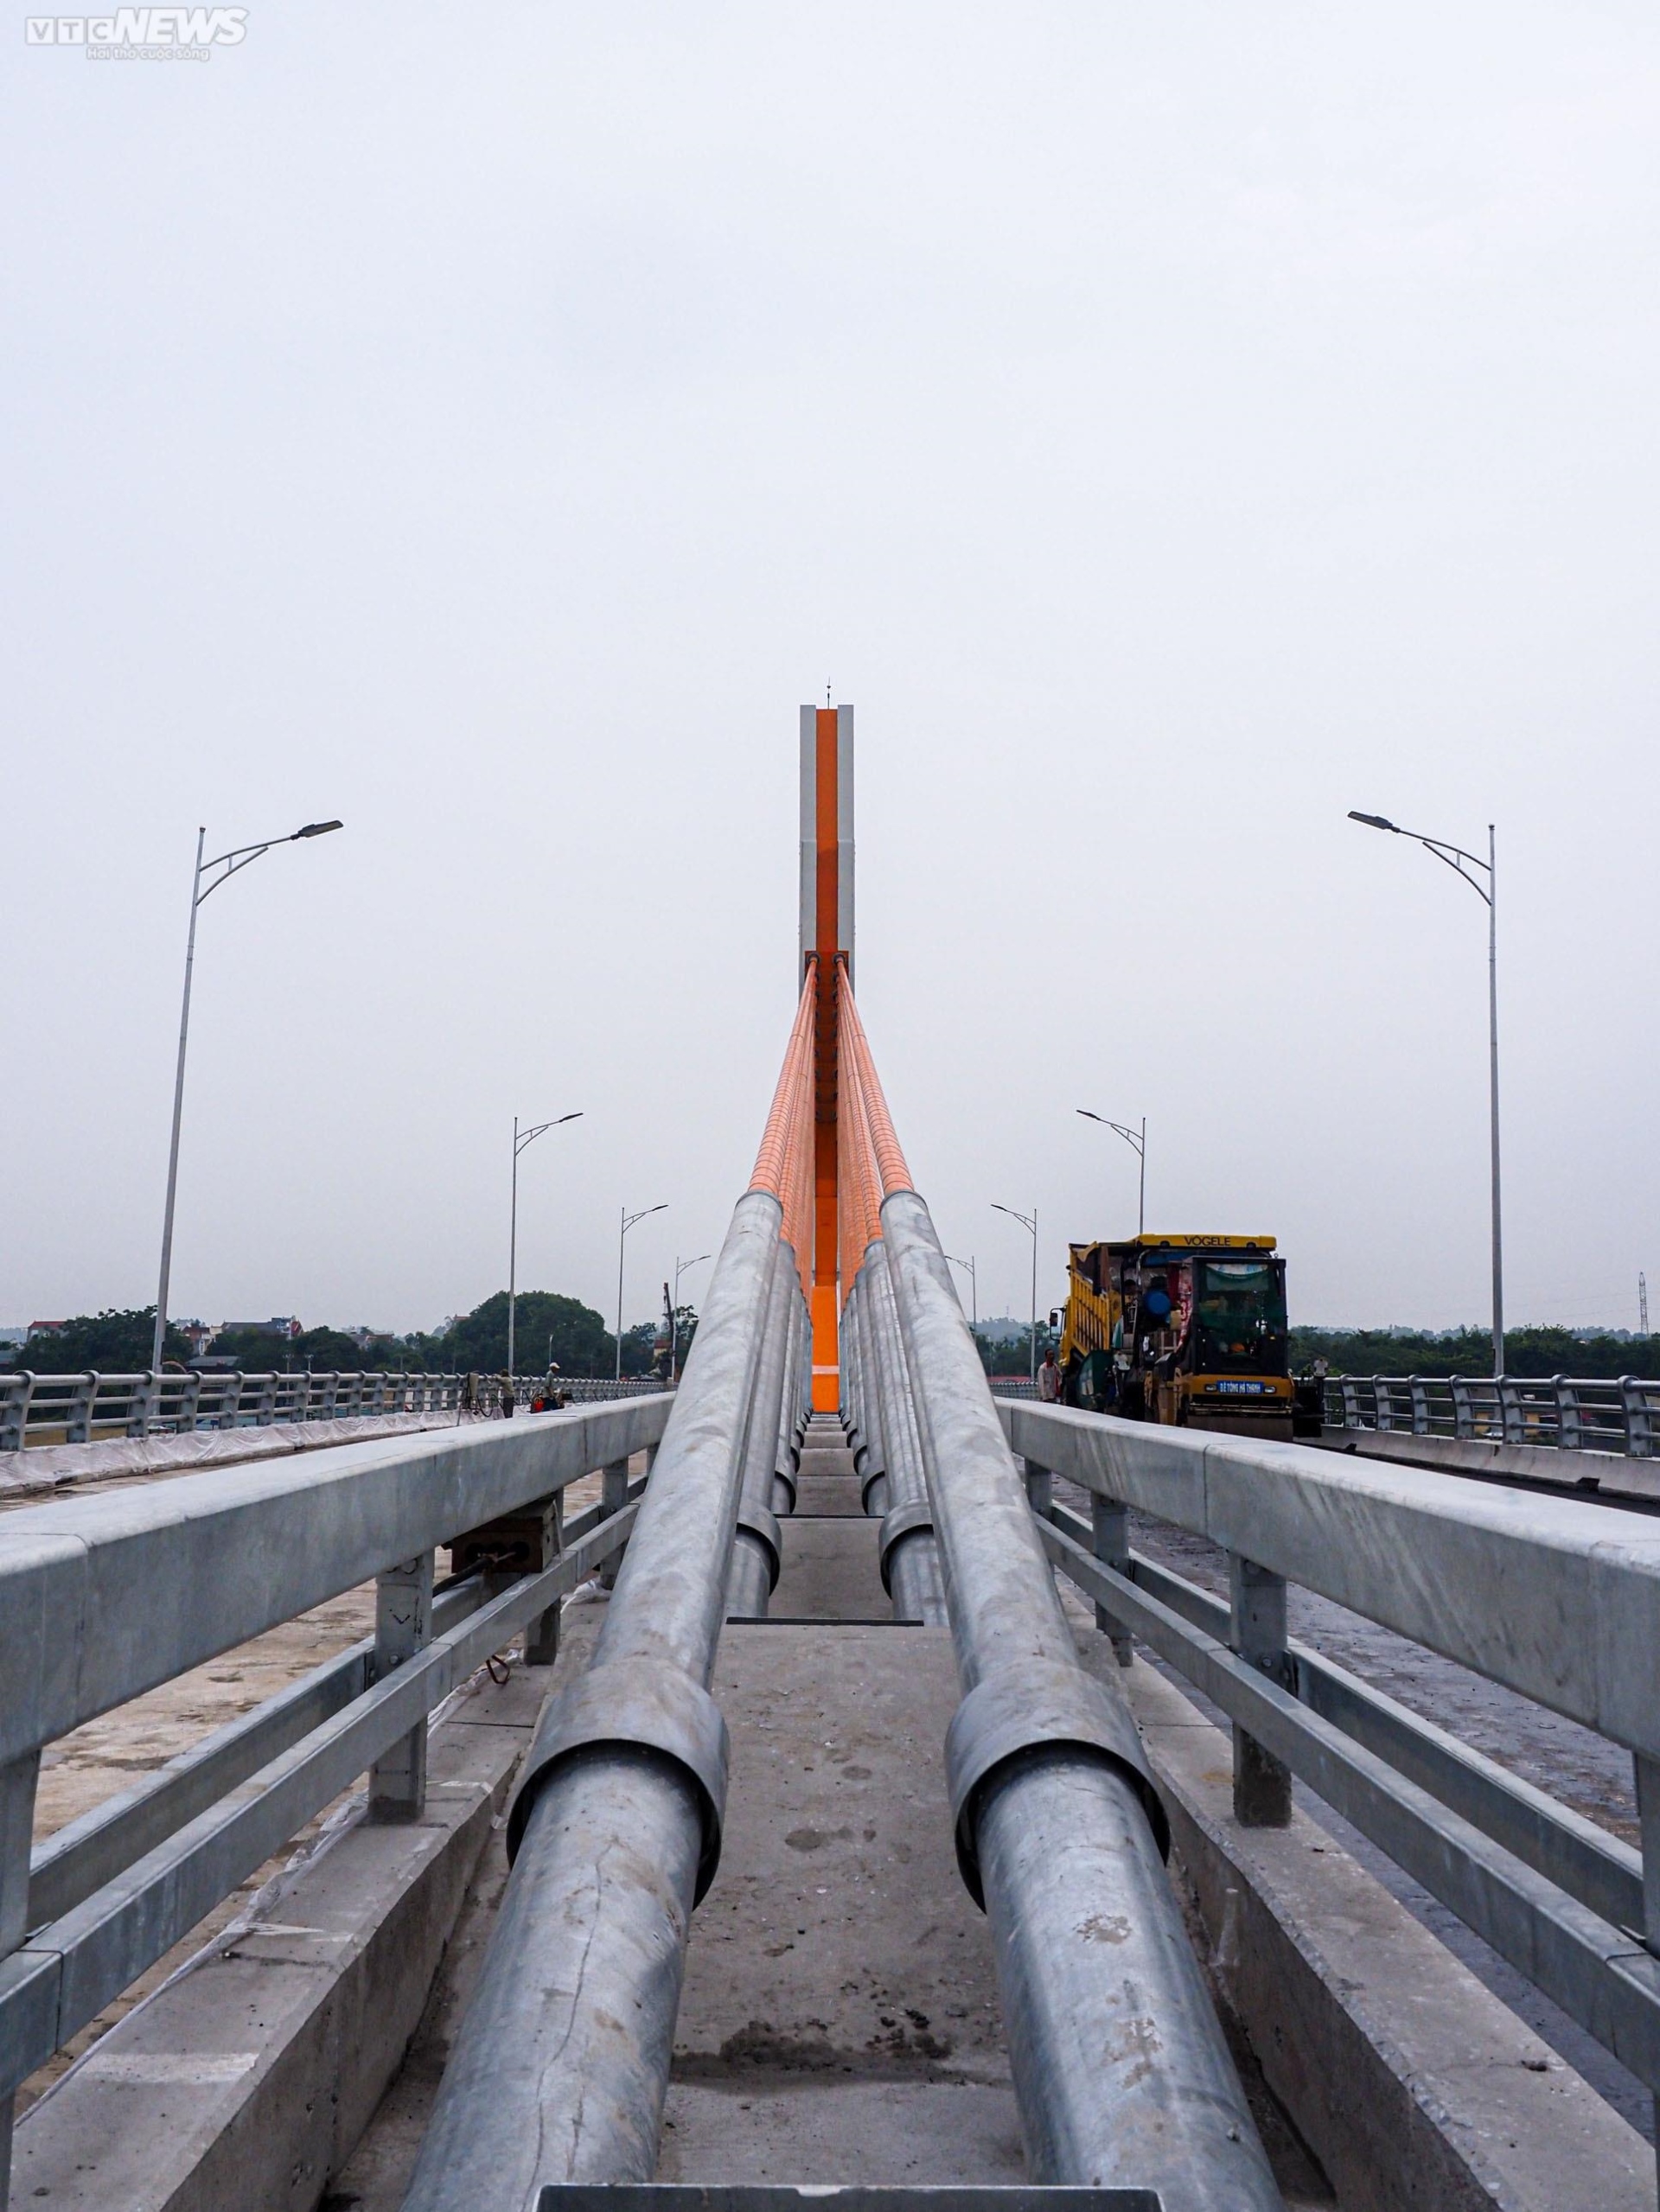 Chiêm ngưỡng cây cầu 540 tỷ đồng nối 2 tỉnh Vĩnh Phúc và Phú Thọ - Ảnh 9.